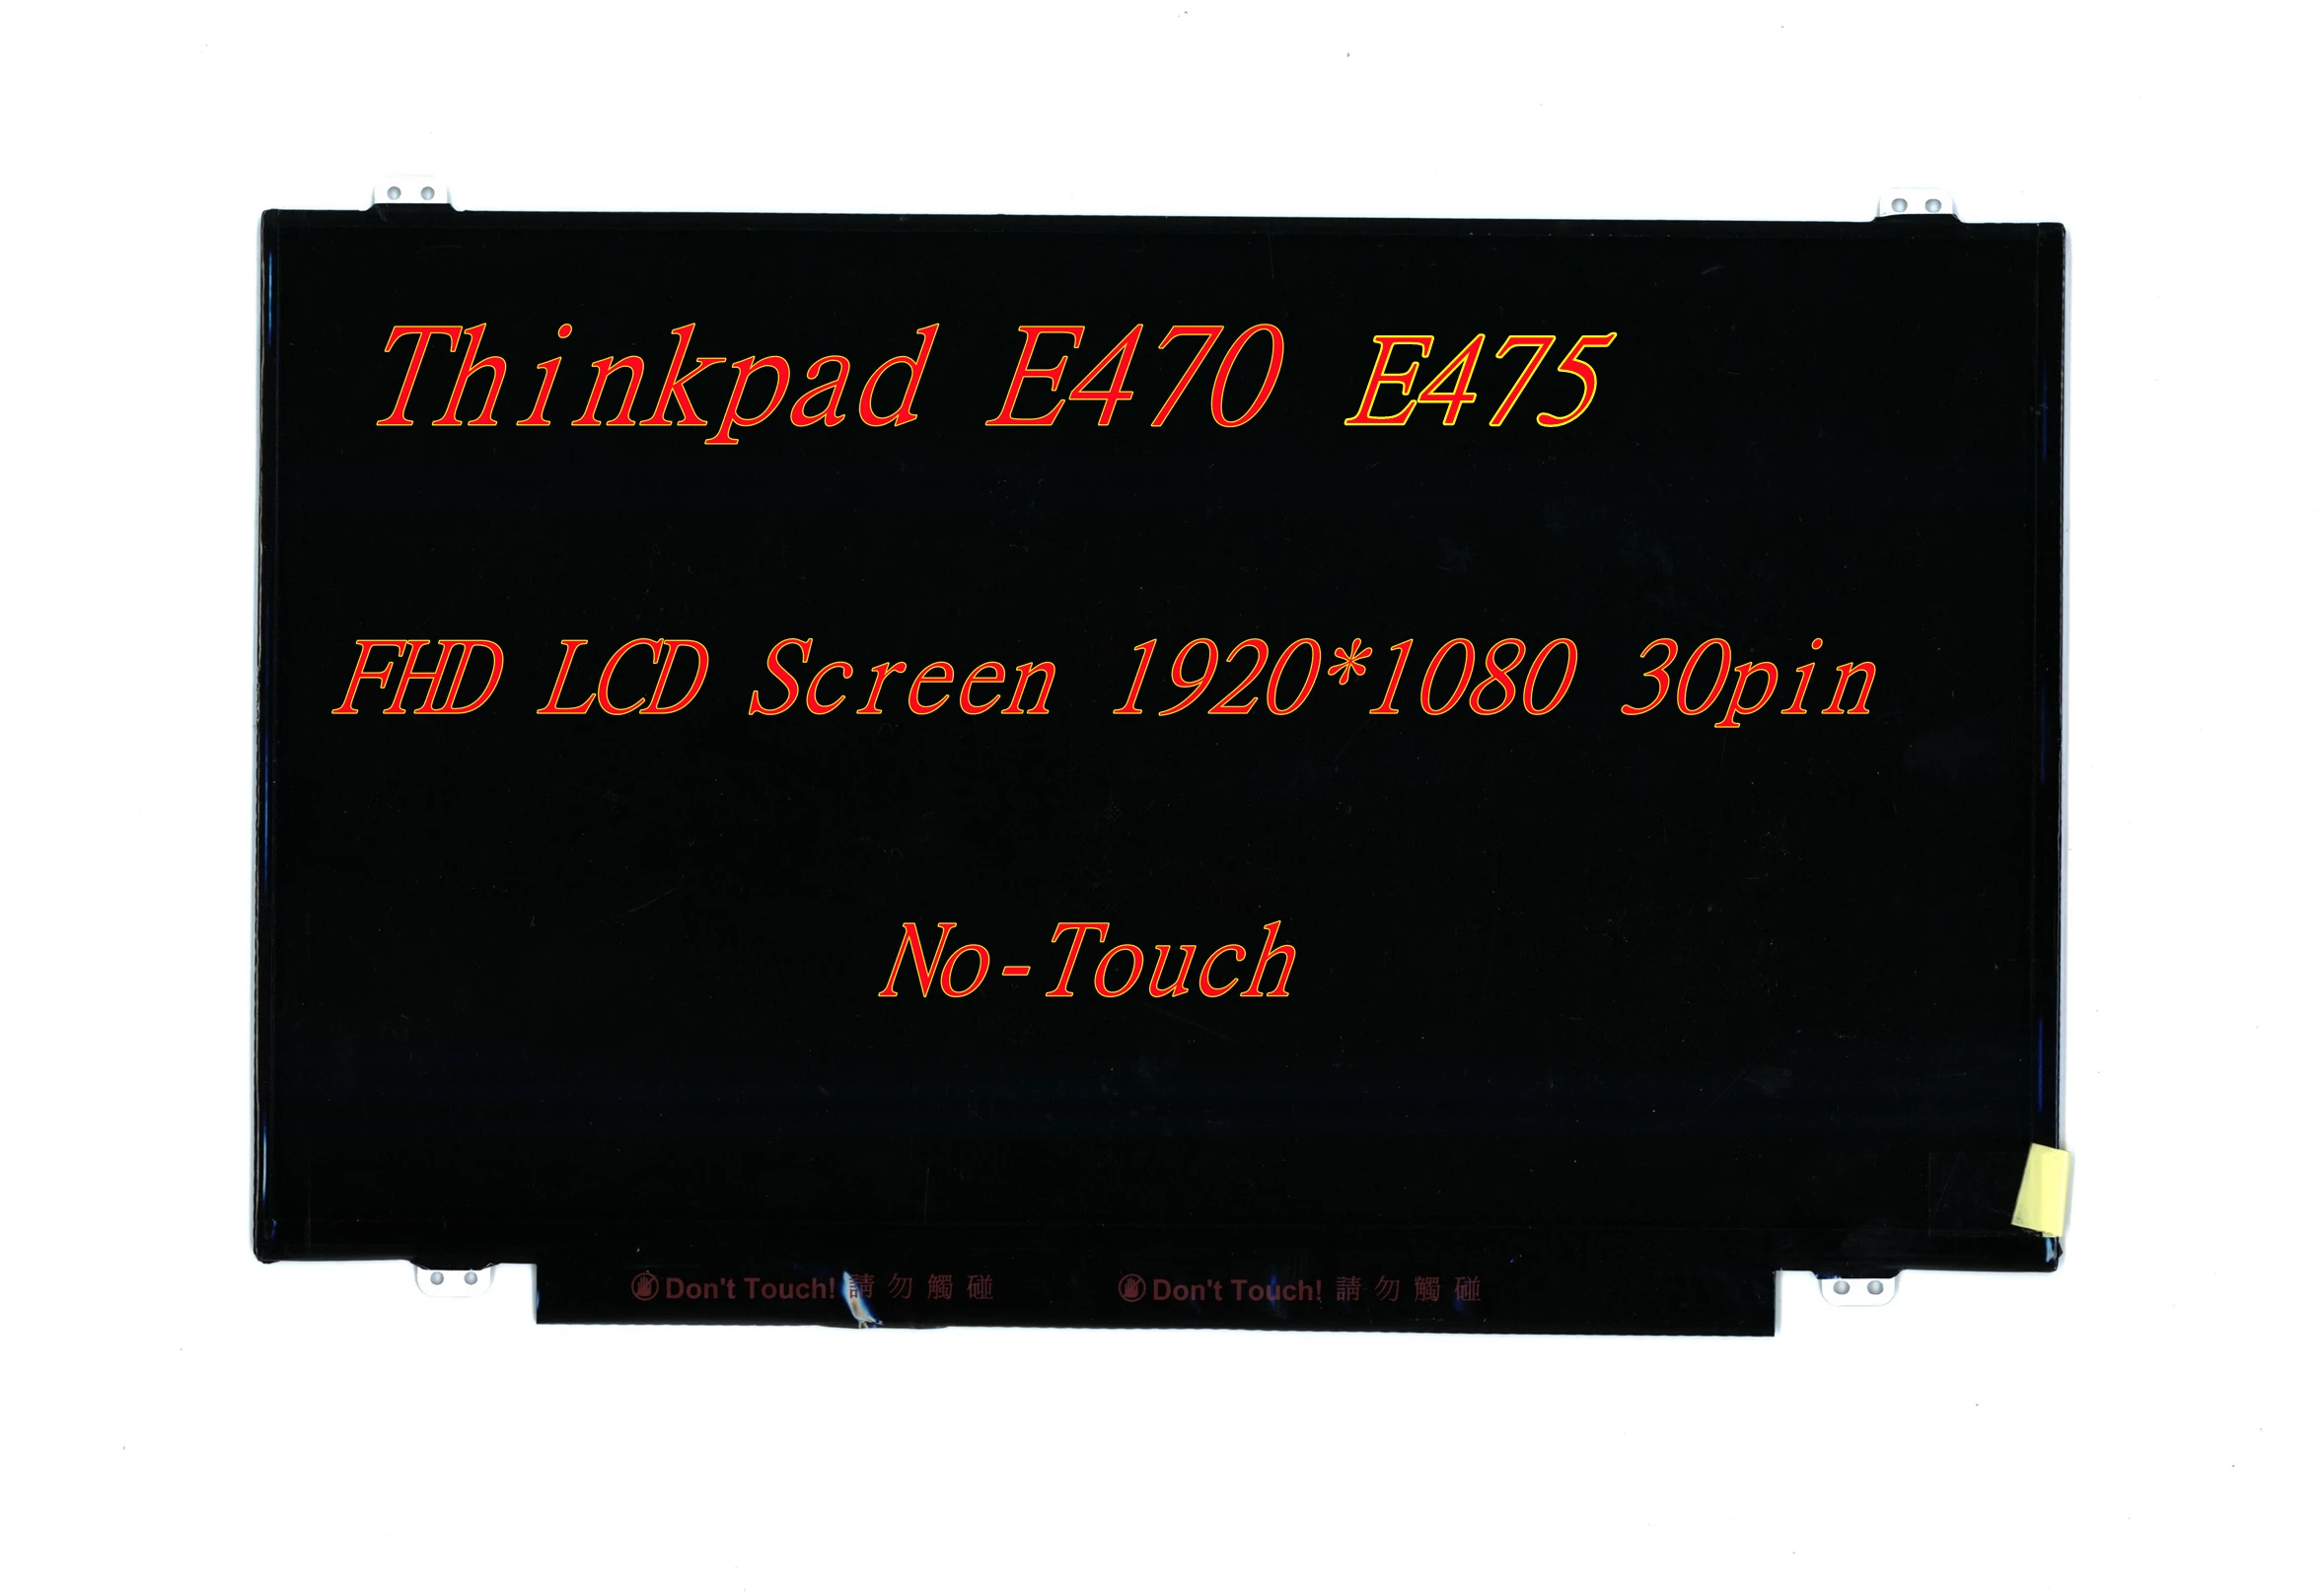 

New 14.0 FHD LCD Screen 1920*1080 30pin For Lenovo Thinkpad E470 E475 No-Touch Screen FRU 01HY314 00NY662 00NY661